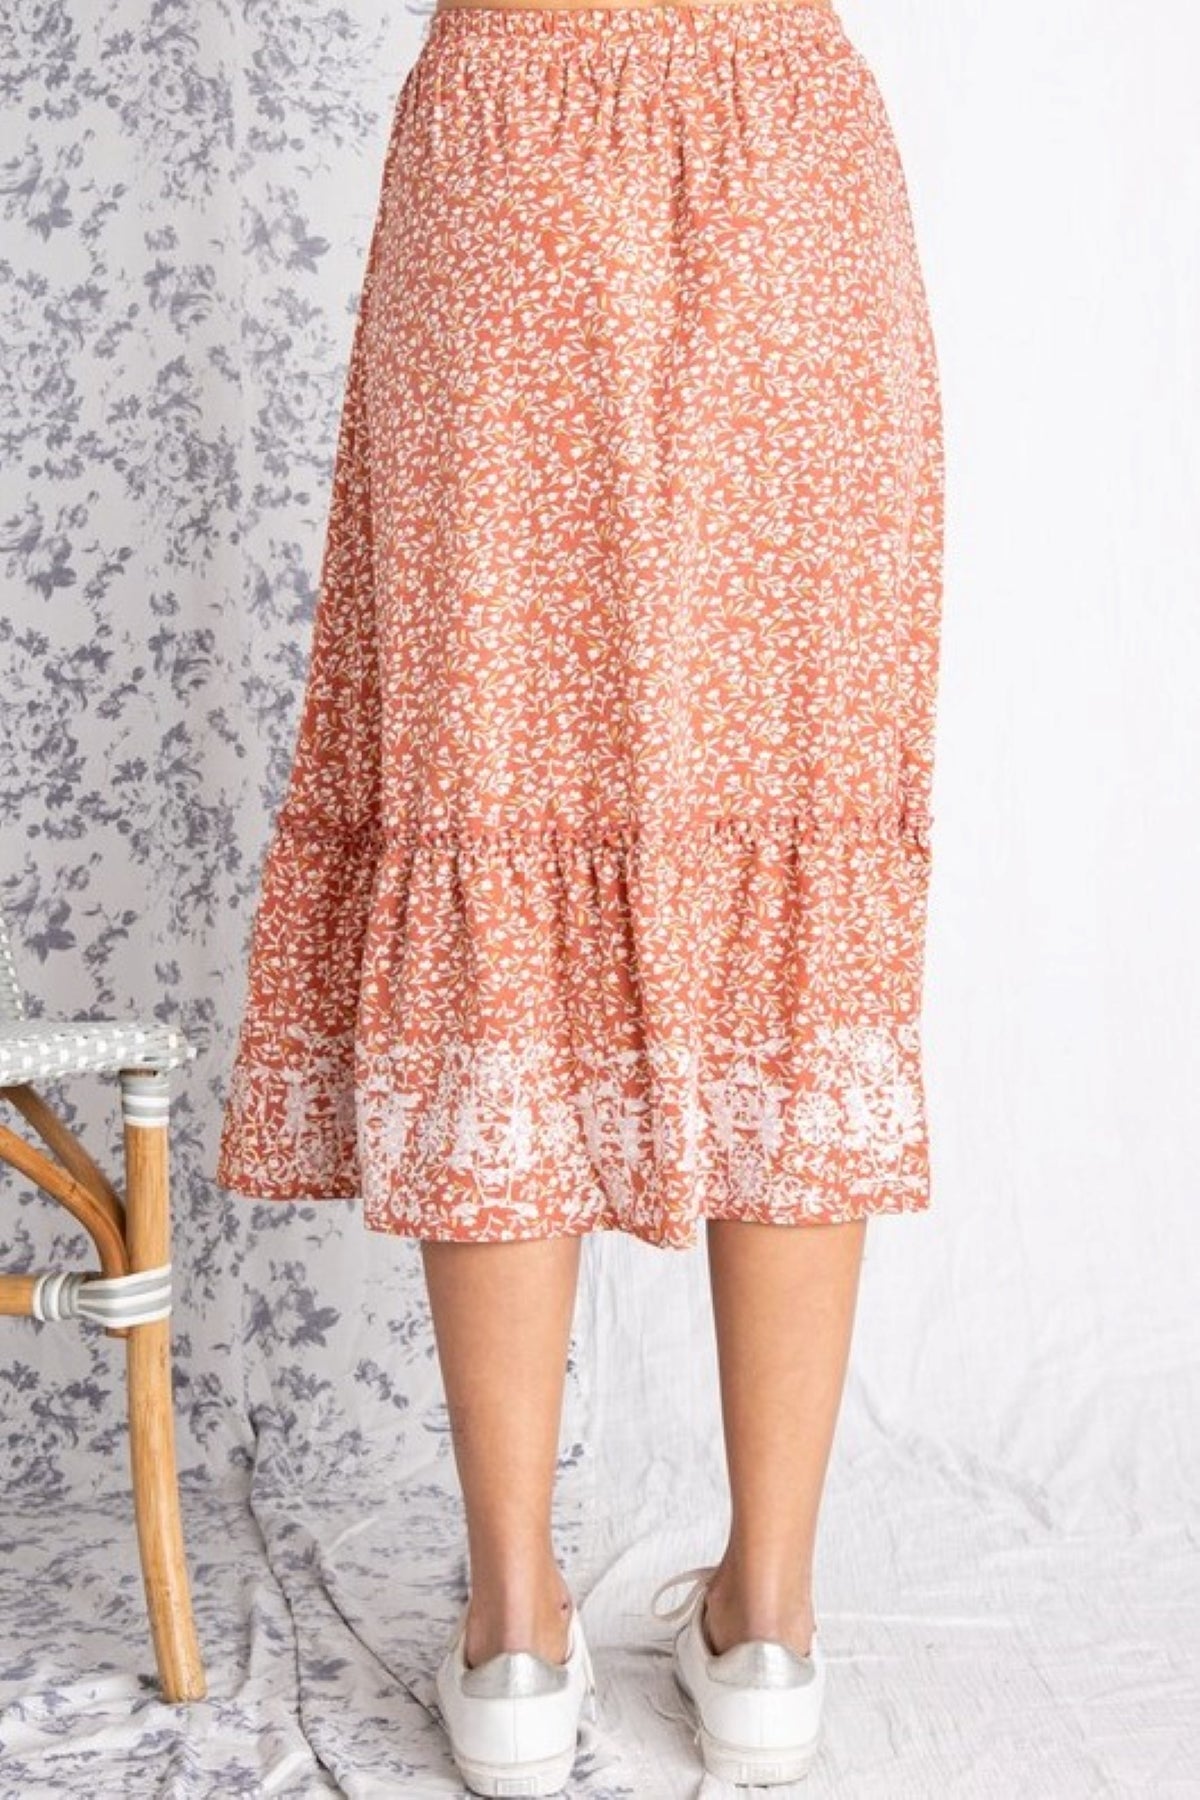 Ingrid Embroidered Floral Midi Skirt